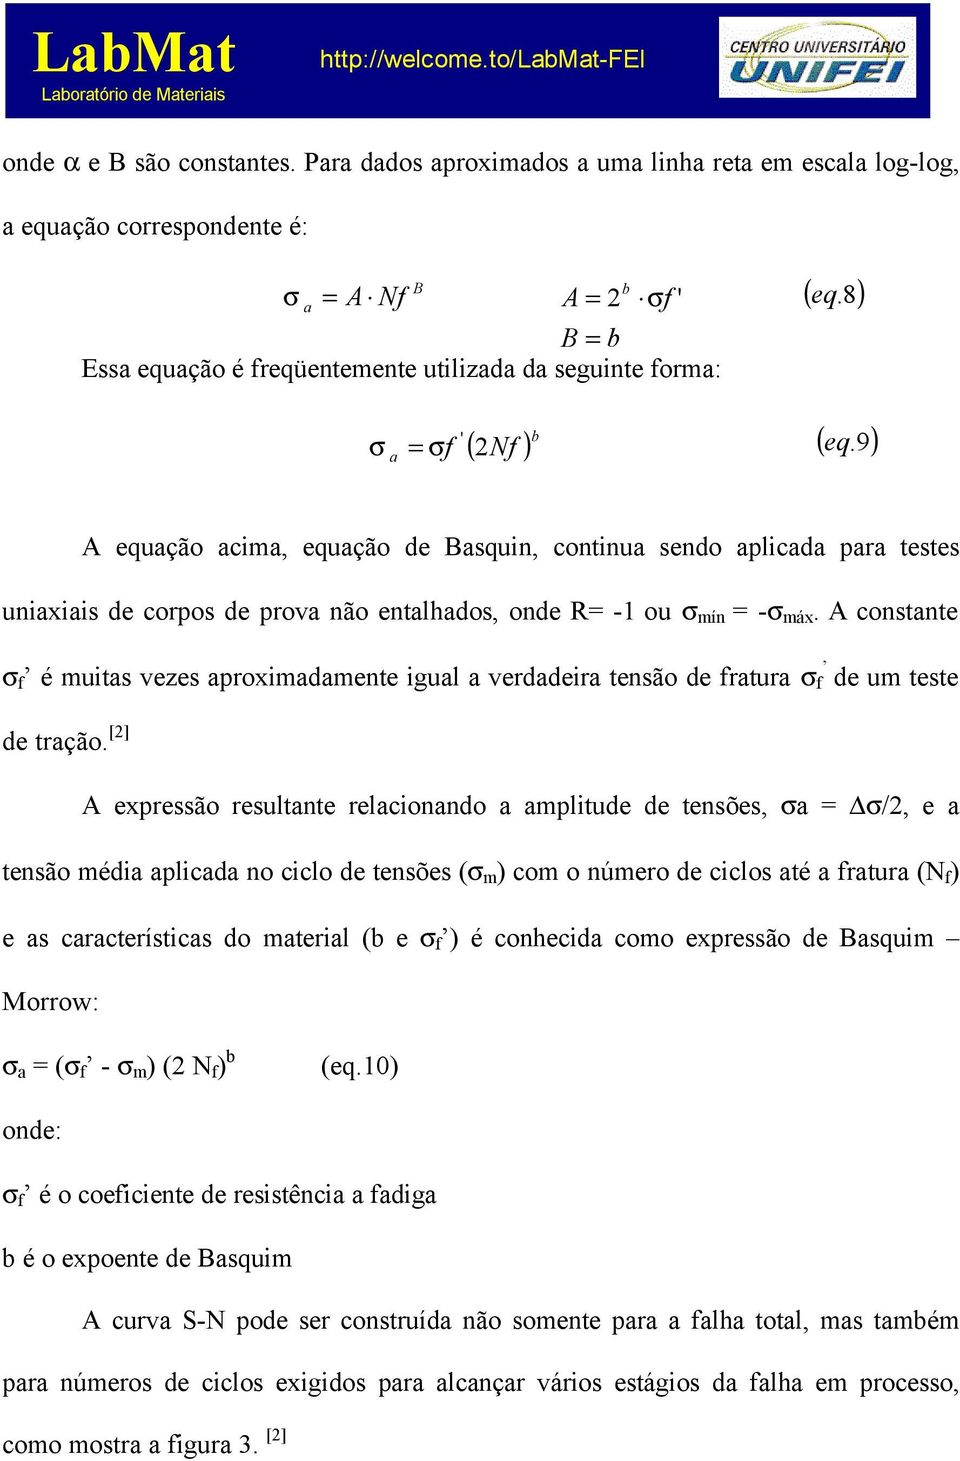 ' ( eq.8) ( eq.9) A equação acima, equação de Basquin, continua sendo aplicada para testes uniaxiais de corpos de prova não entalhados, onde R= -1 ou σ mín = -σ máx.